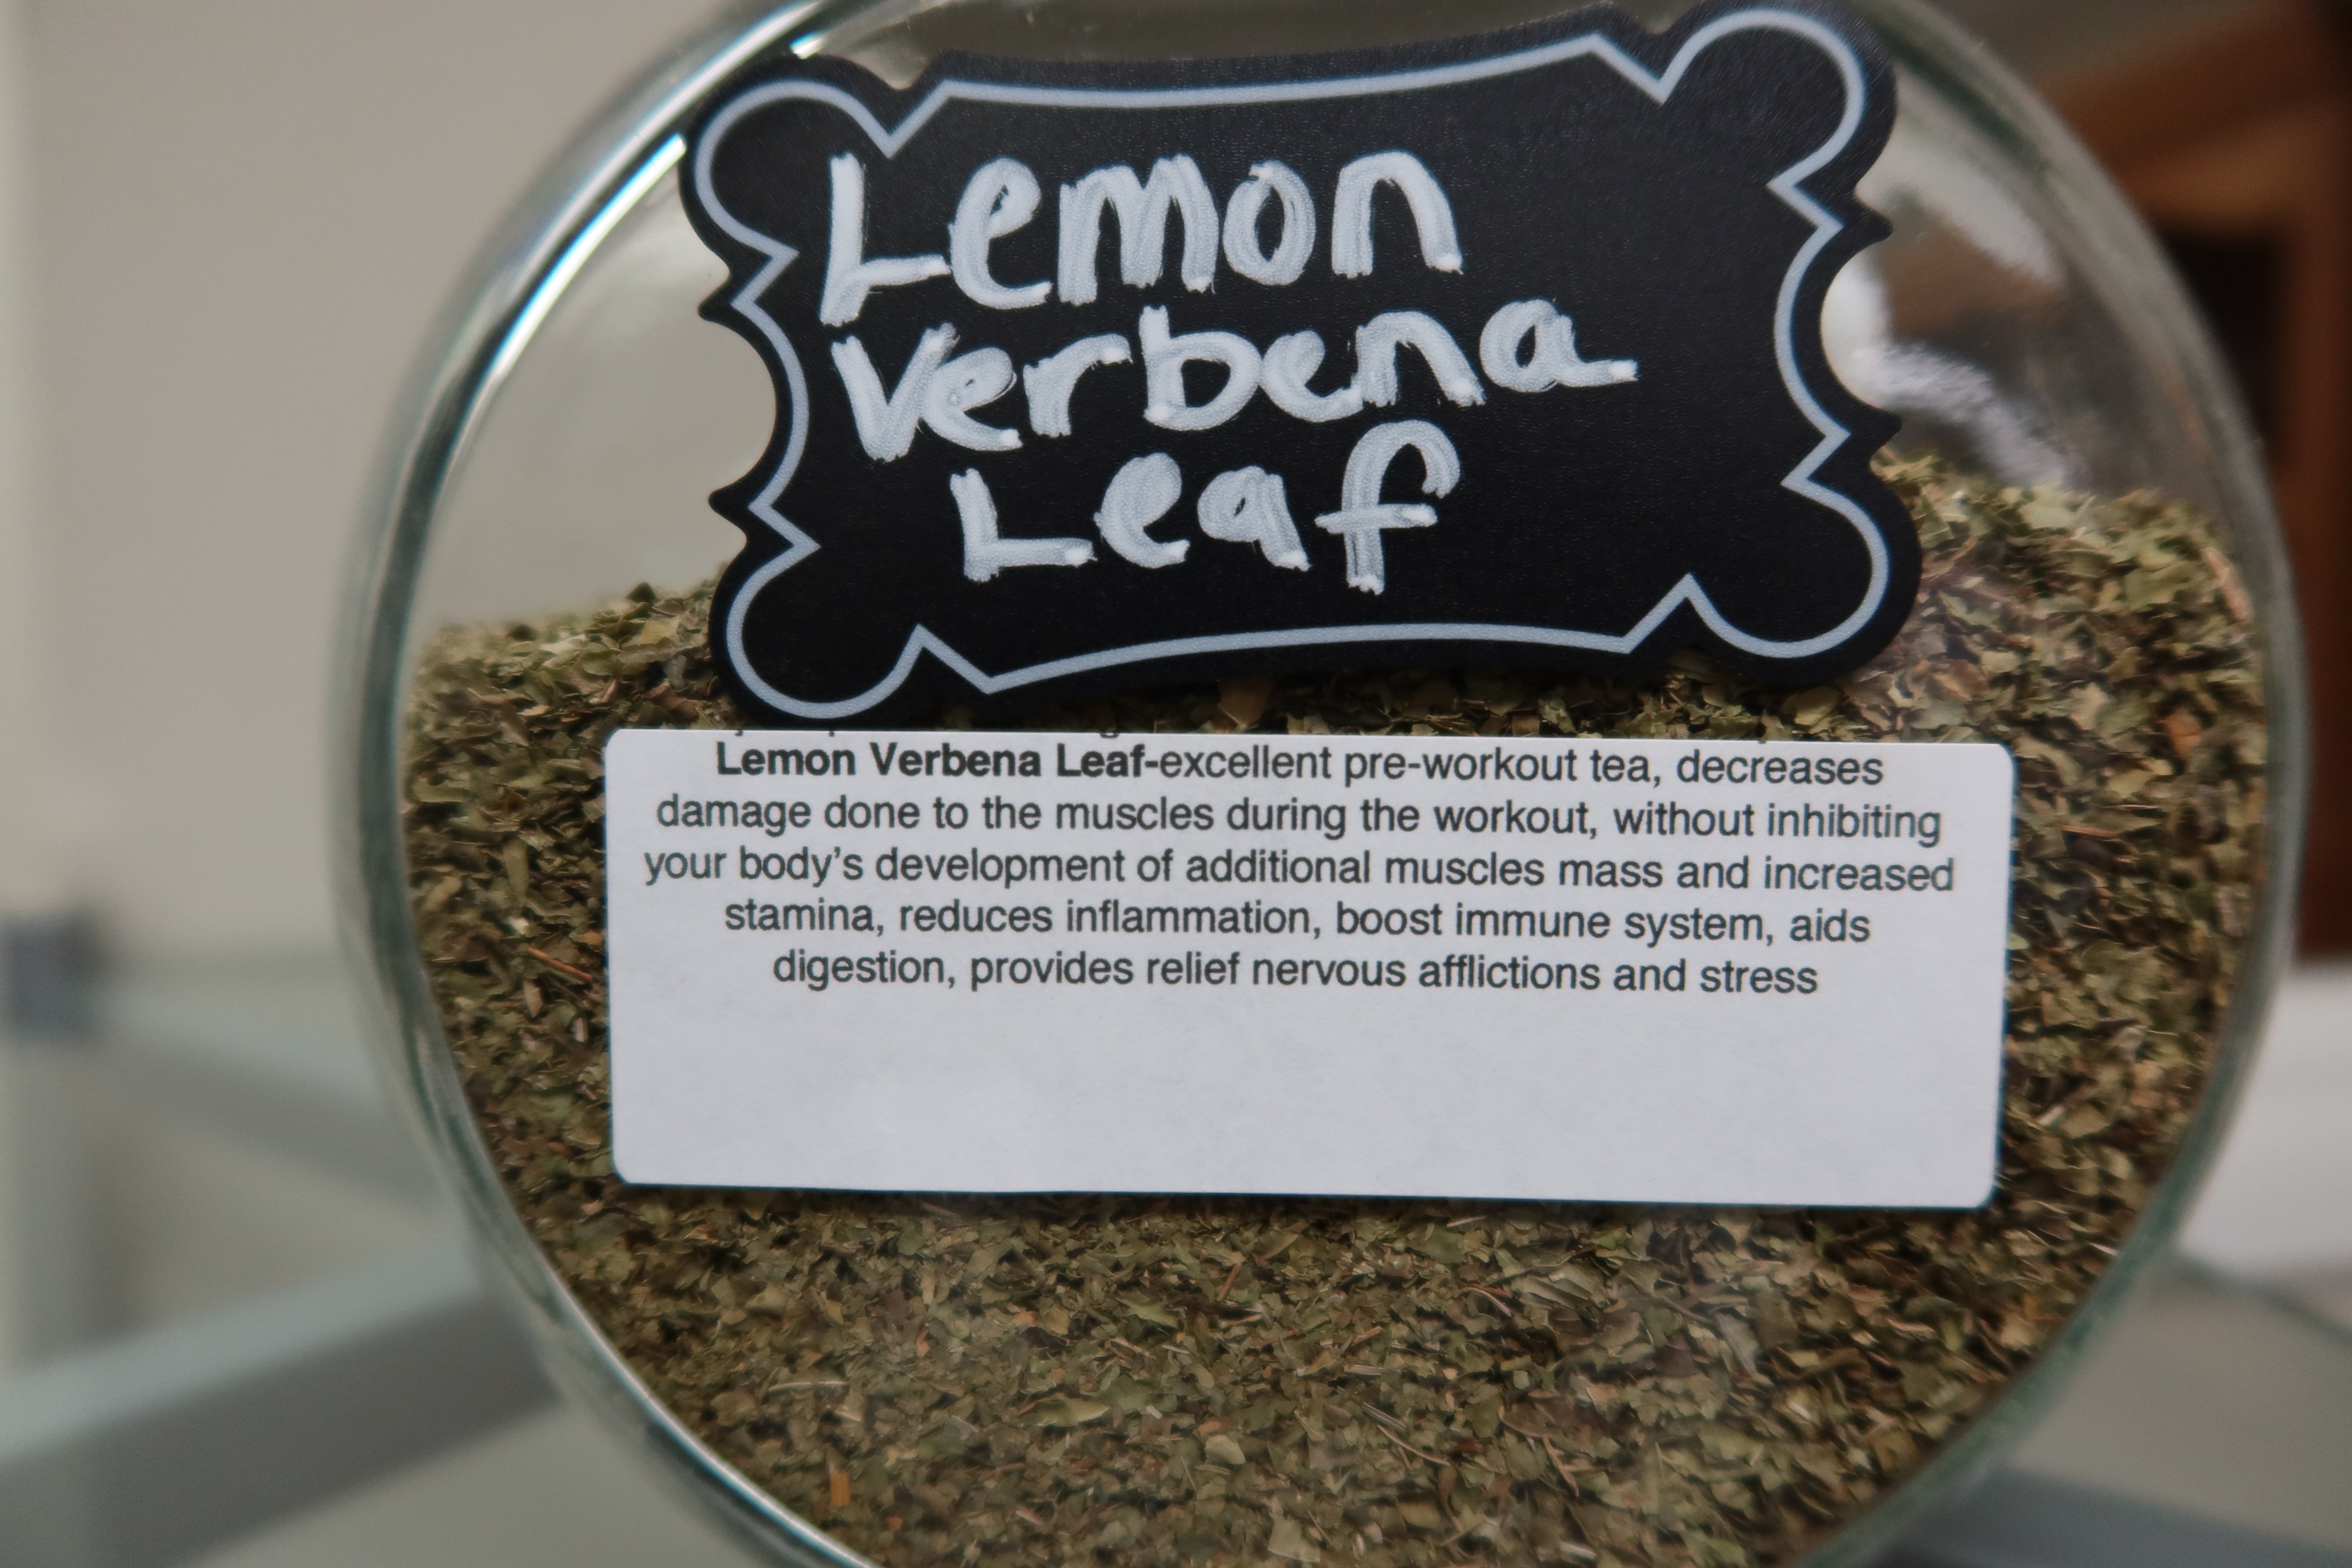 Lemon verbana leaf